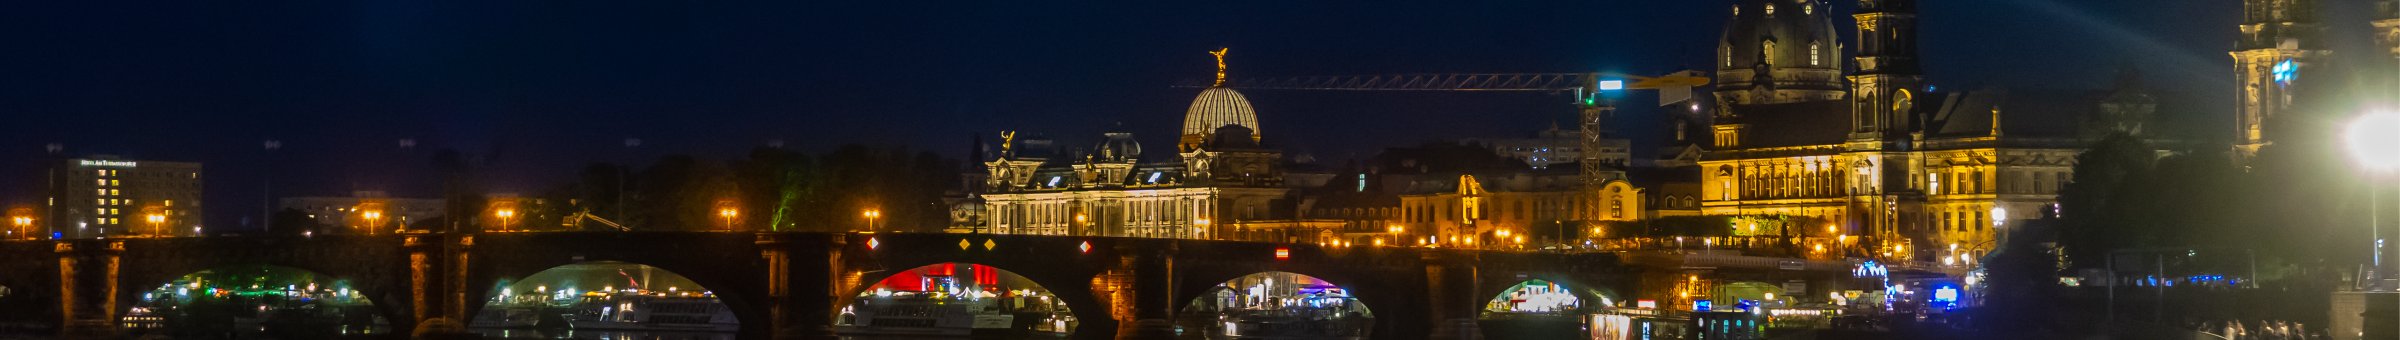 Ein Foto ist dargestellt vom Ufer der Elbe aus, auf die beleuchtete Landeshauptstadt Dresden Altstadt und die Albertbrücke. Angestrahlt glänzt die Stadt bei Nacht in besonders goldenem Licht.